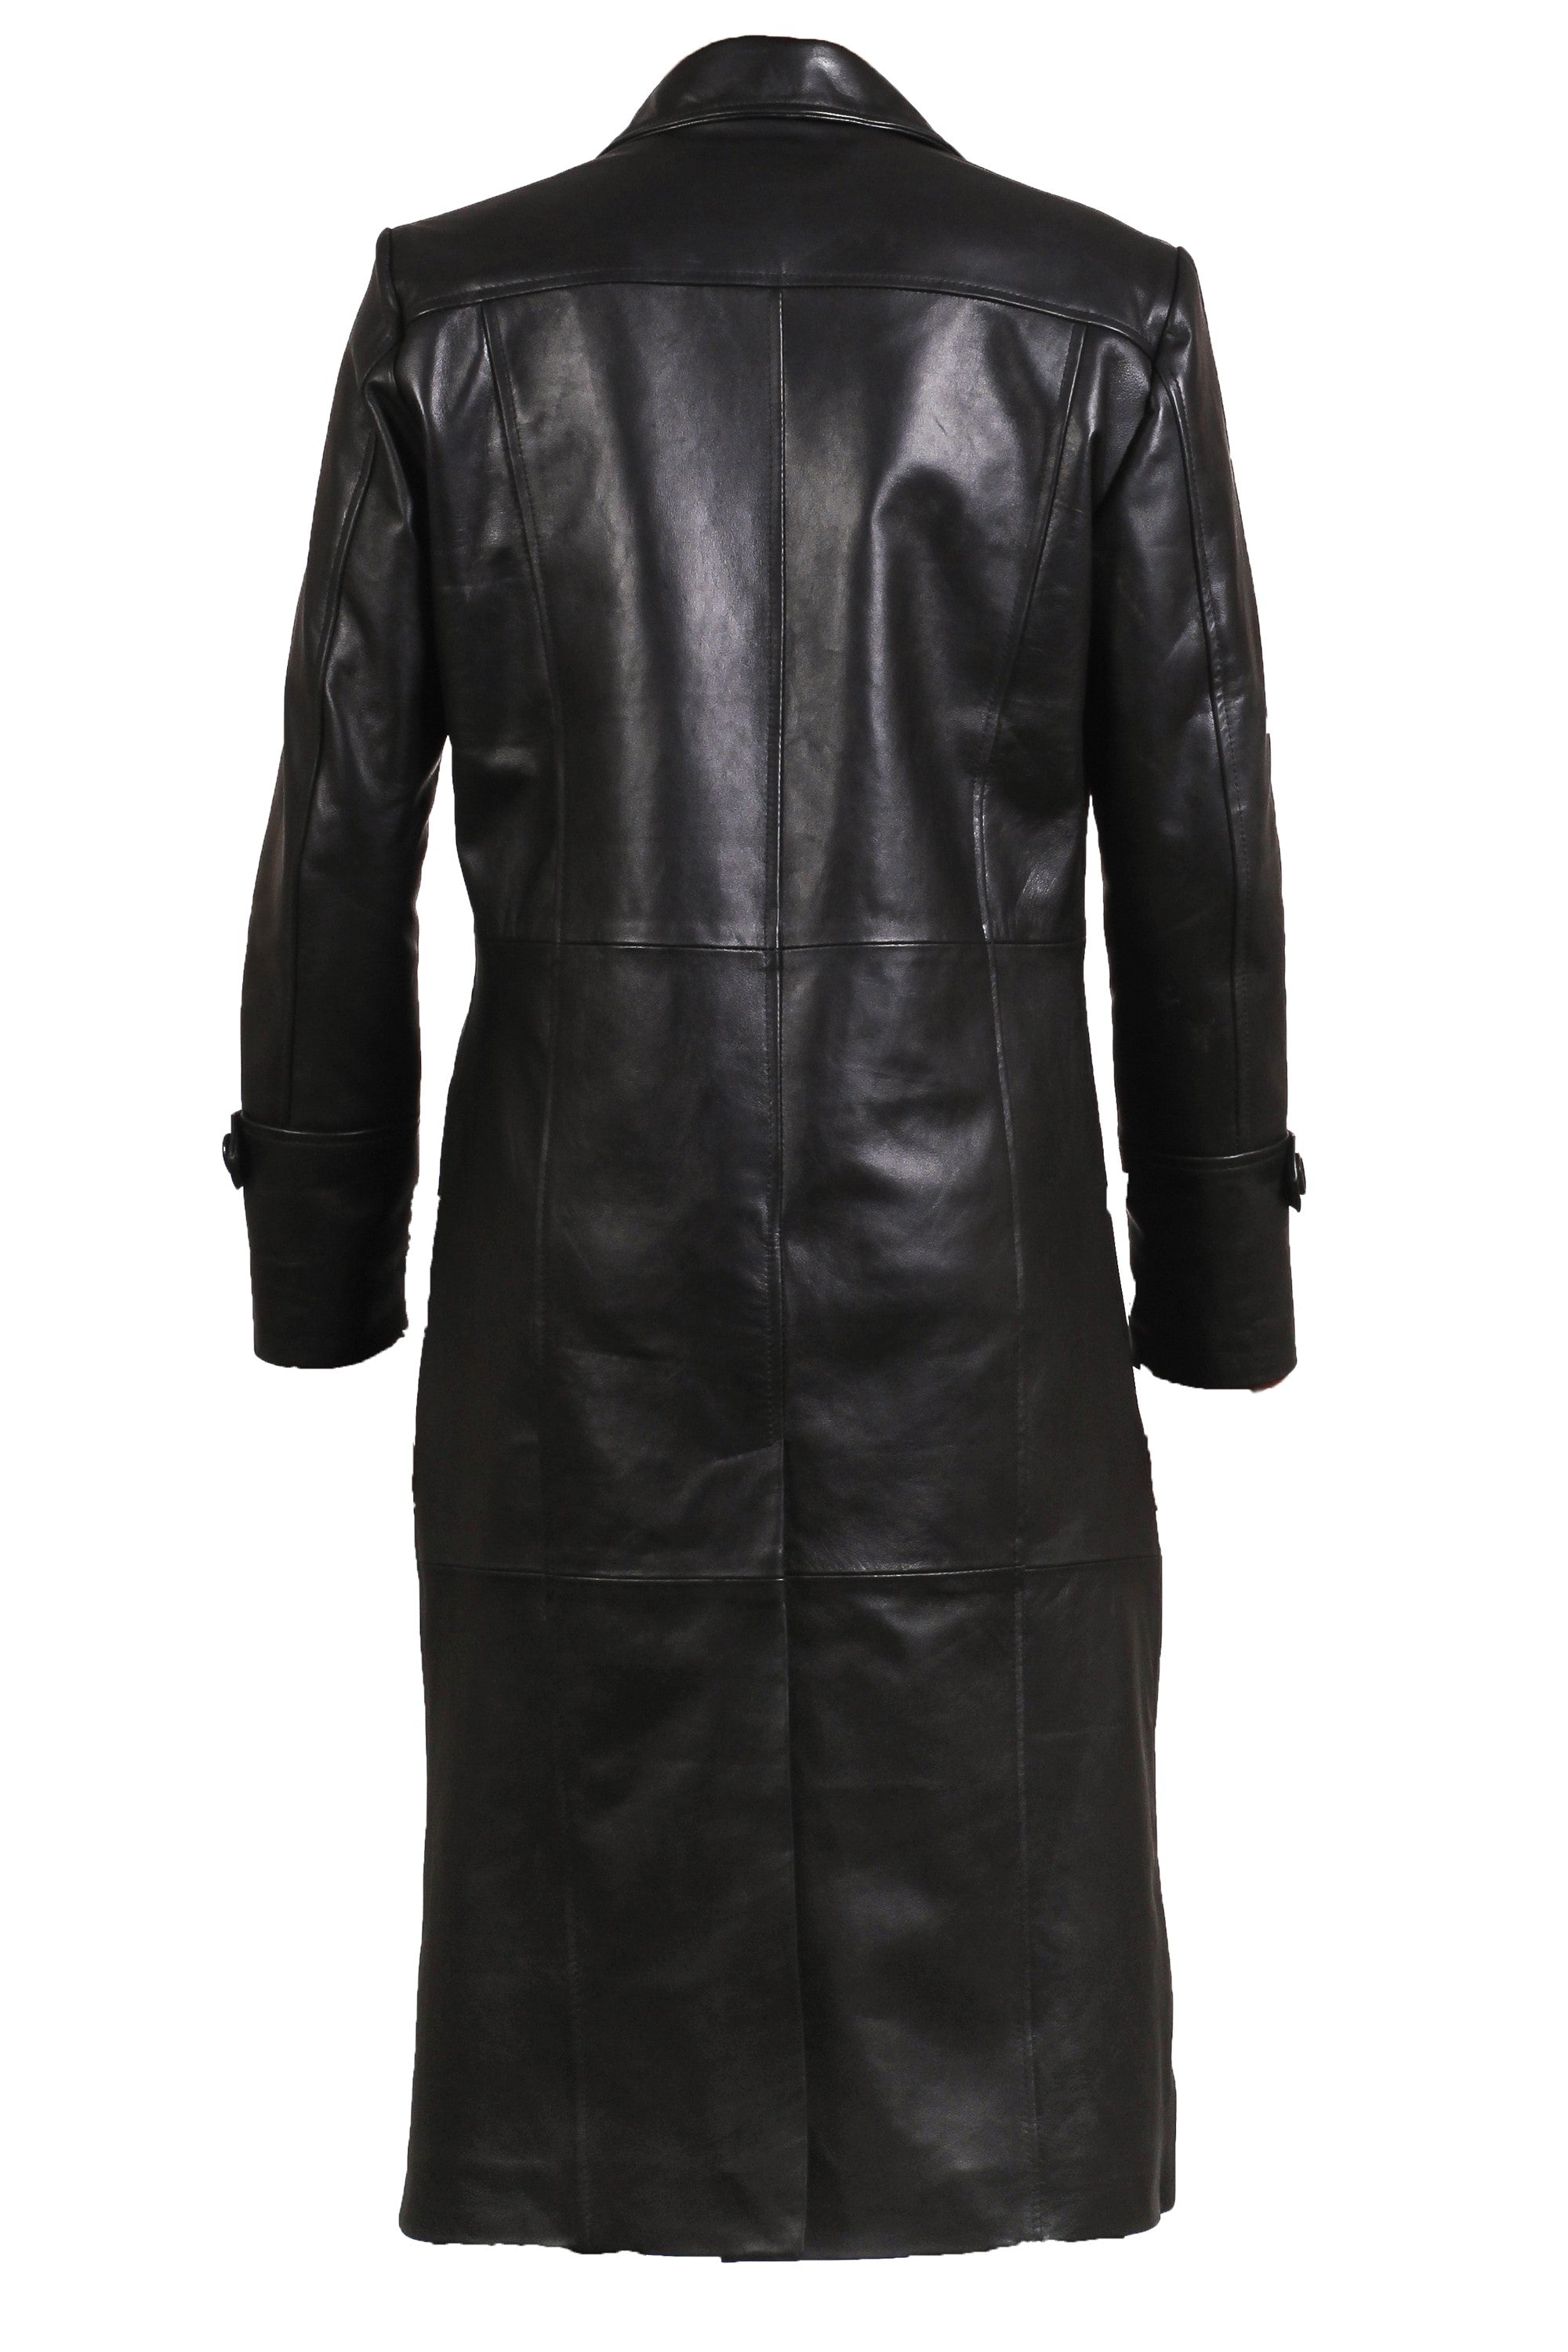 Men Black Leather Trench Coat Leather Vintage Coat For Men